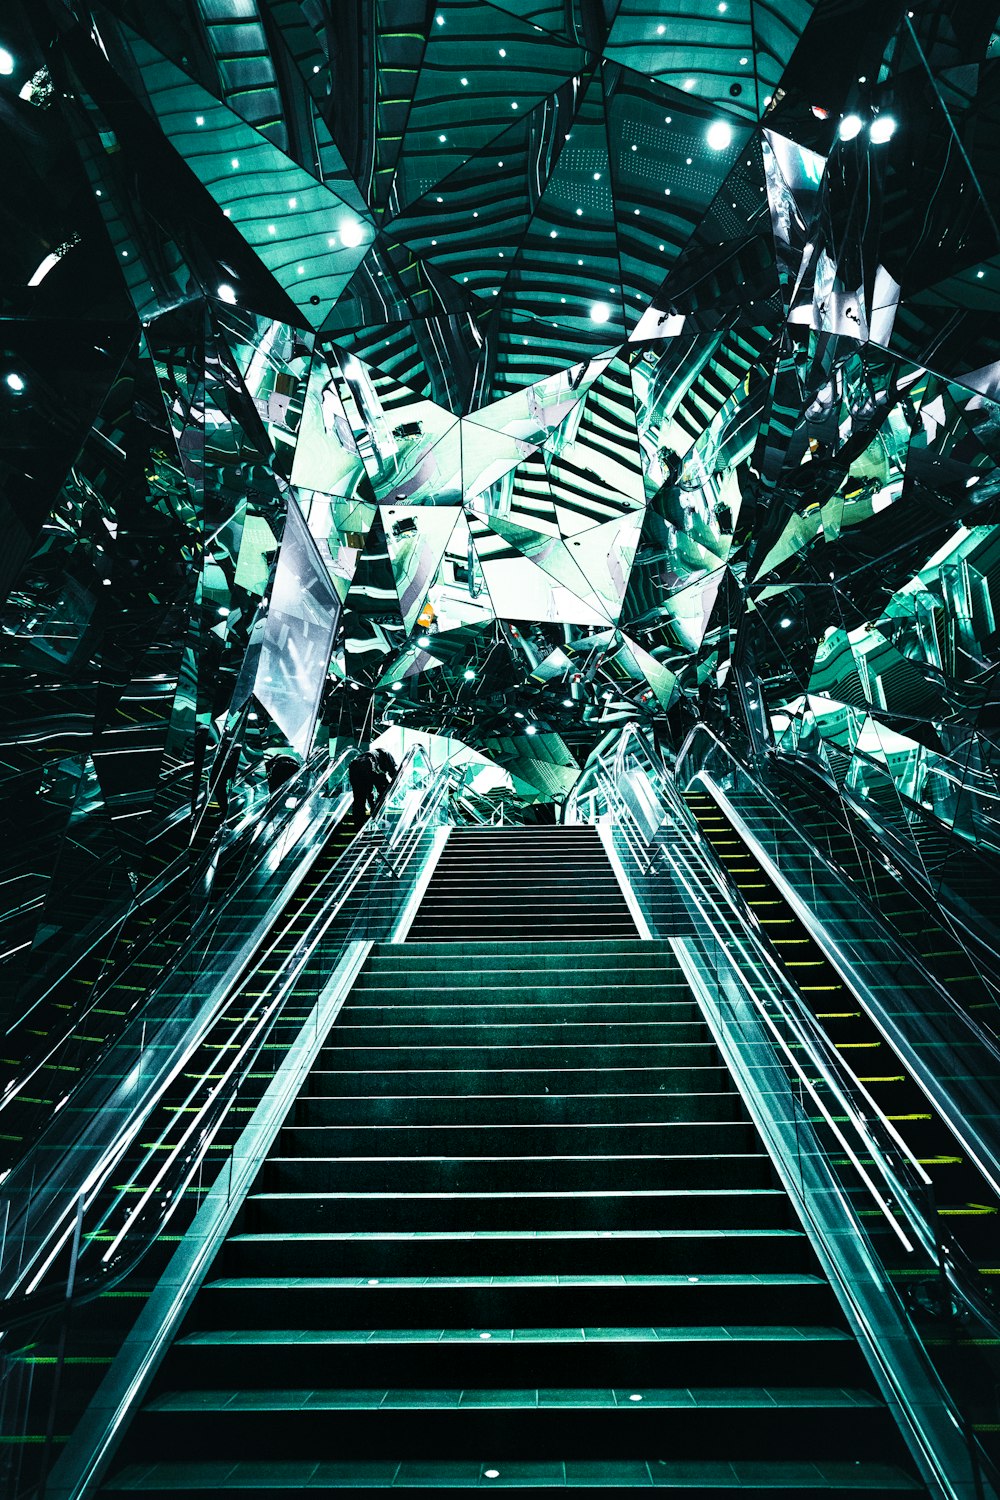 un escalator dans un bâtiment avec beaucoup de miroirs dessus